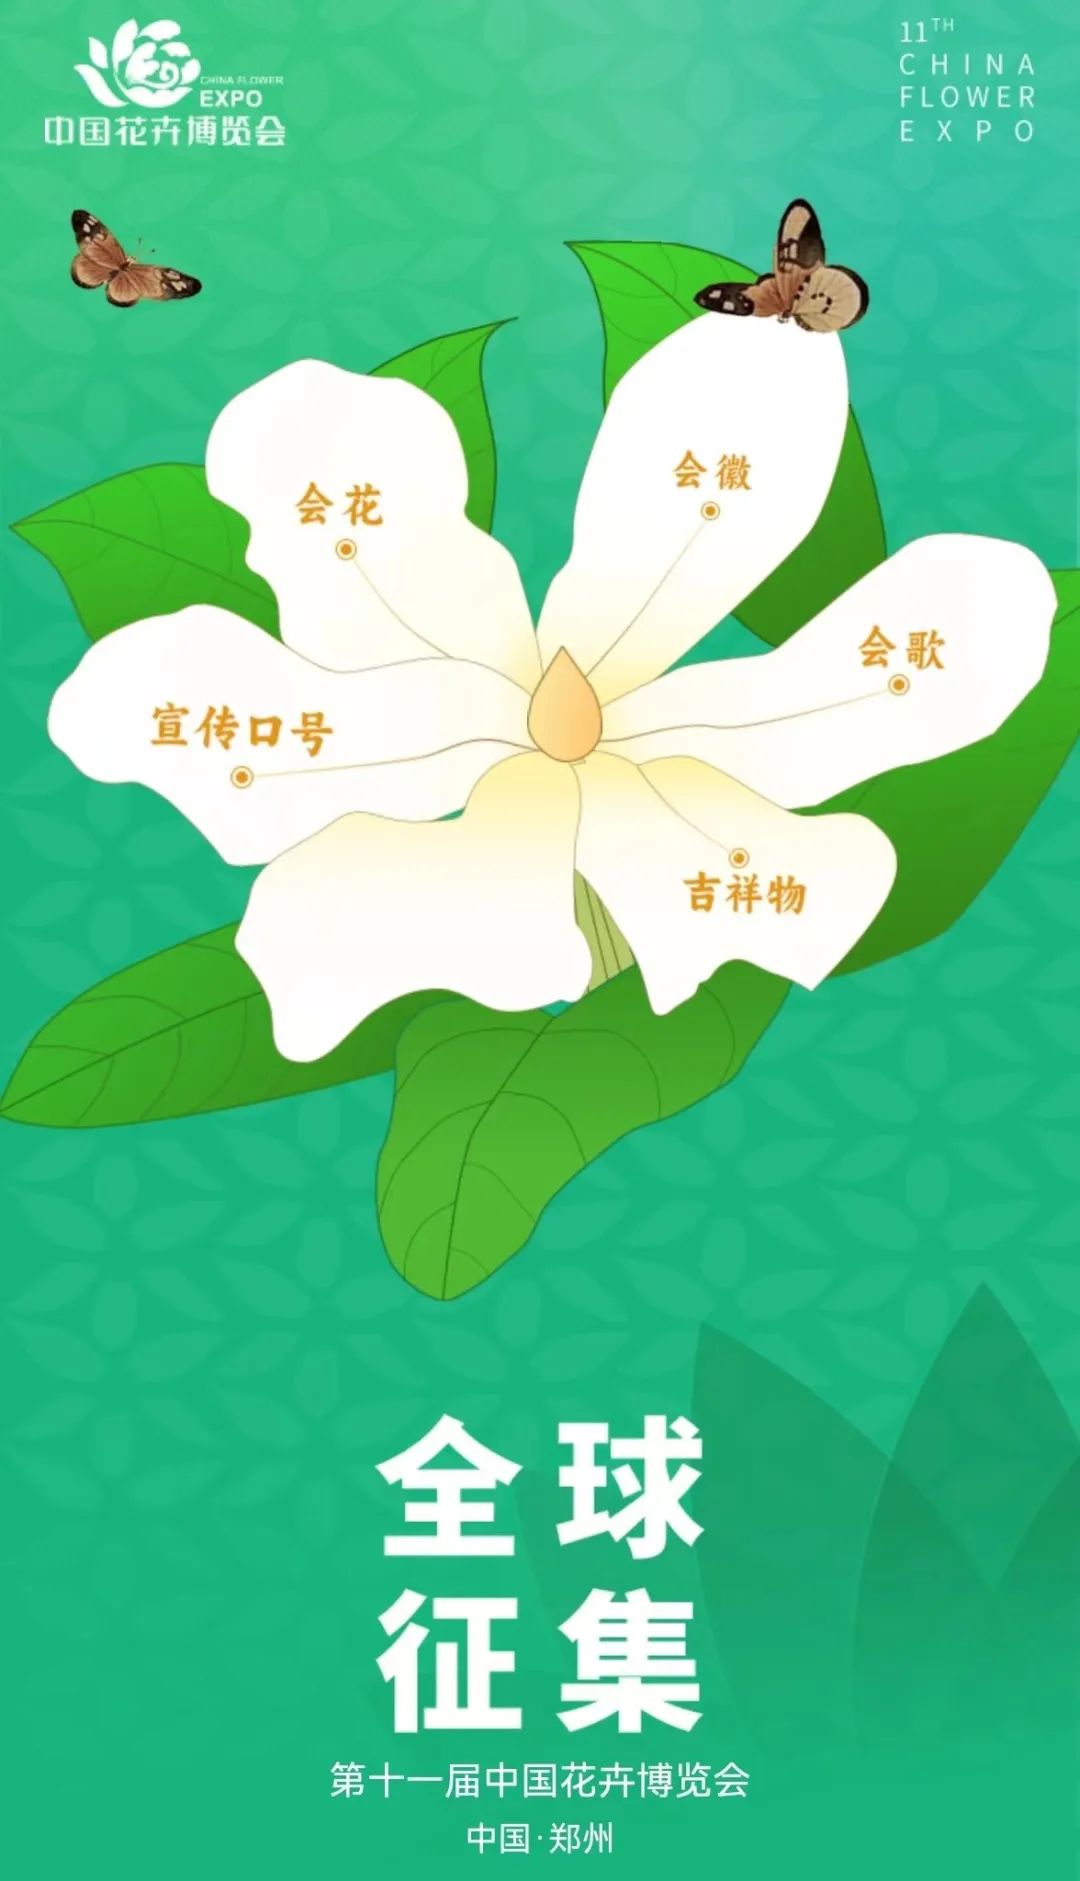 第十一届中国花卉博览会 会徽、吉祥物、会花、会歌、宣传口号 征集公告-CNYISAI艺赛